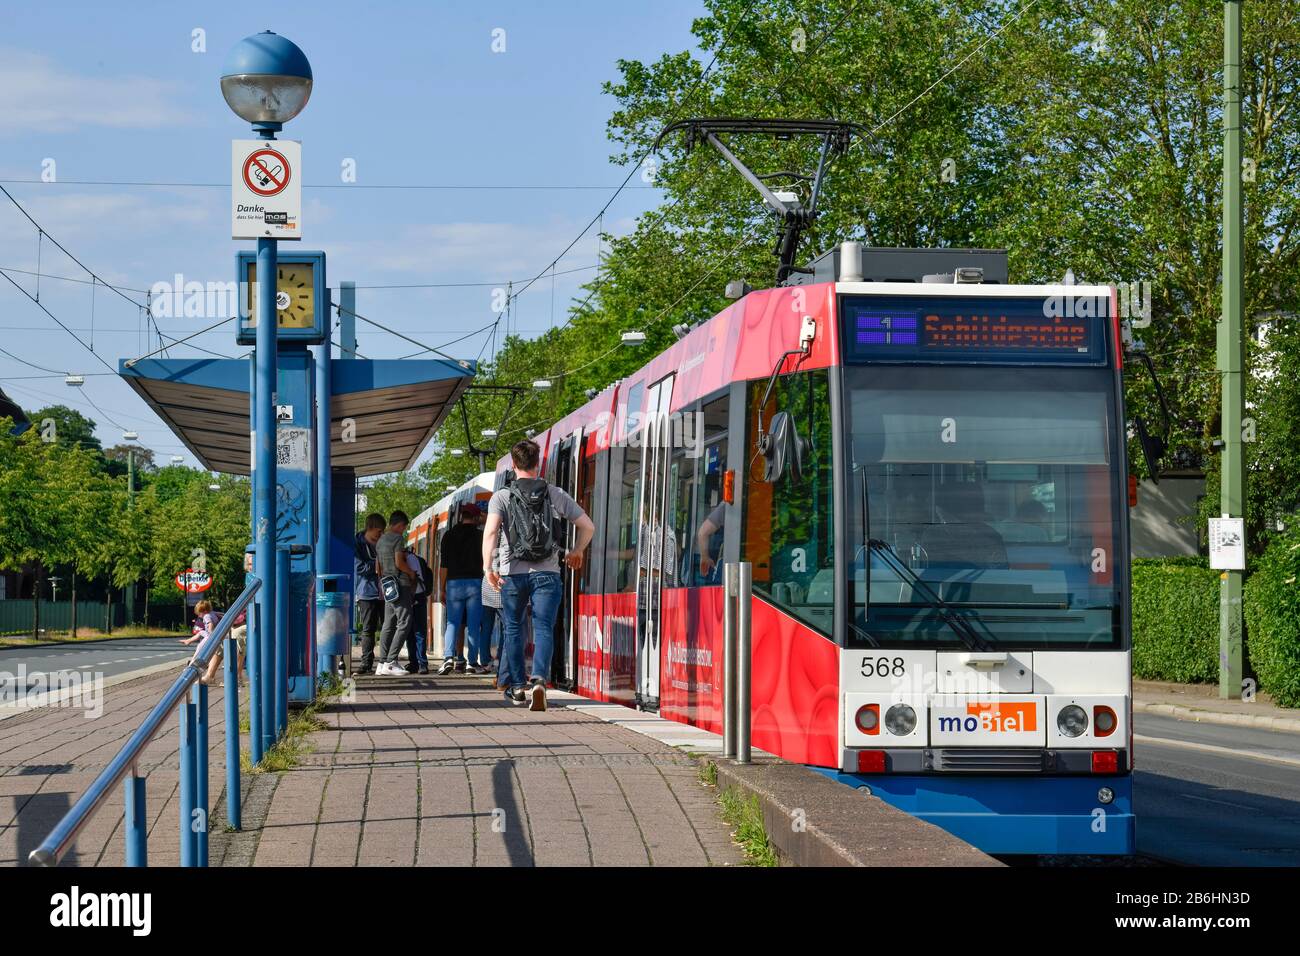 Tram, Artur-Ladebeck-Straße, Bielefeld, Nordrhein-Westfalen, Deutschland Stock Photo